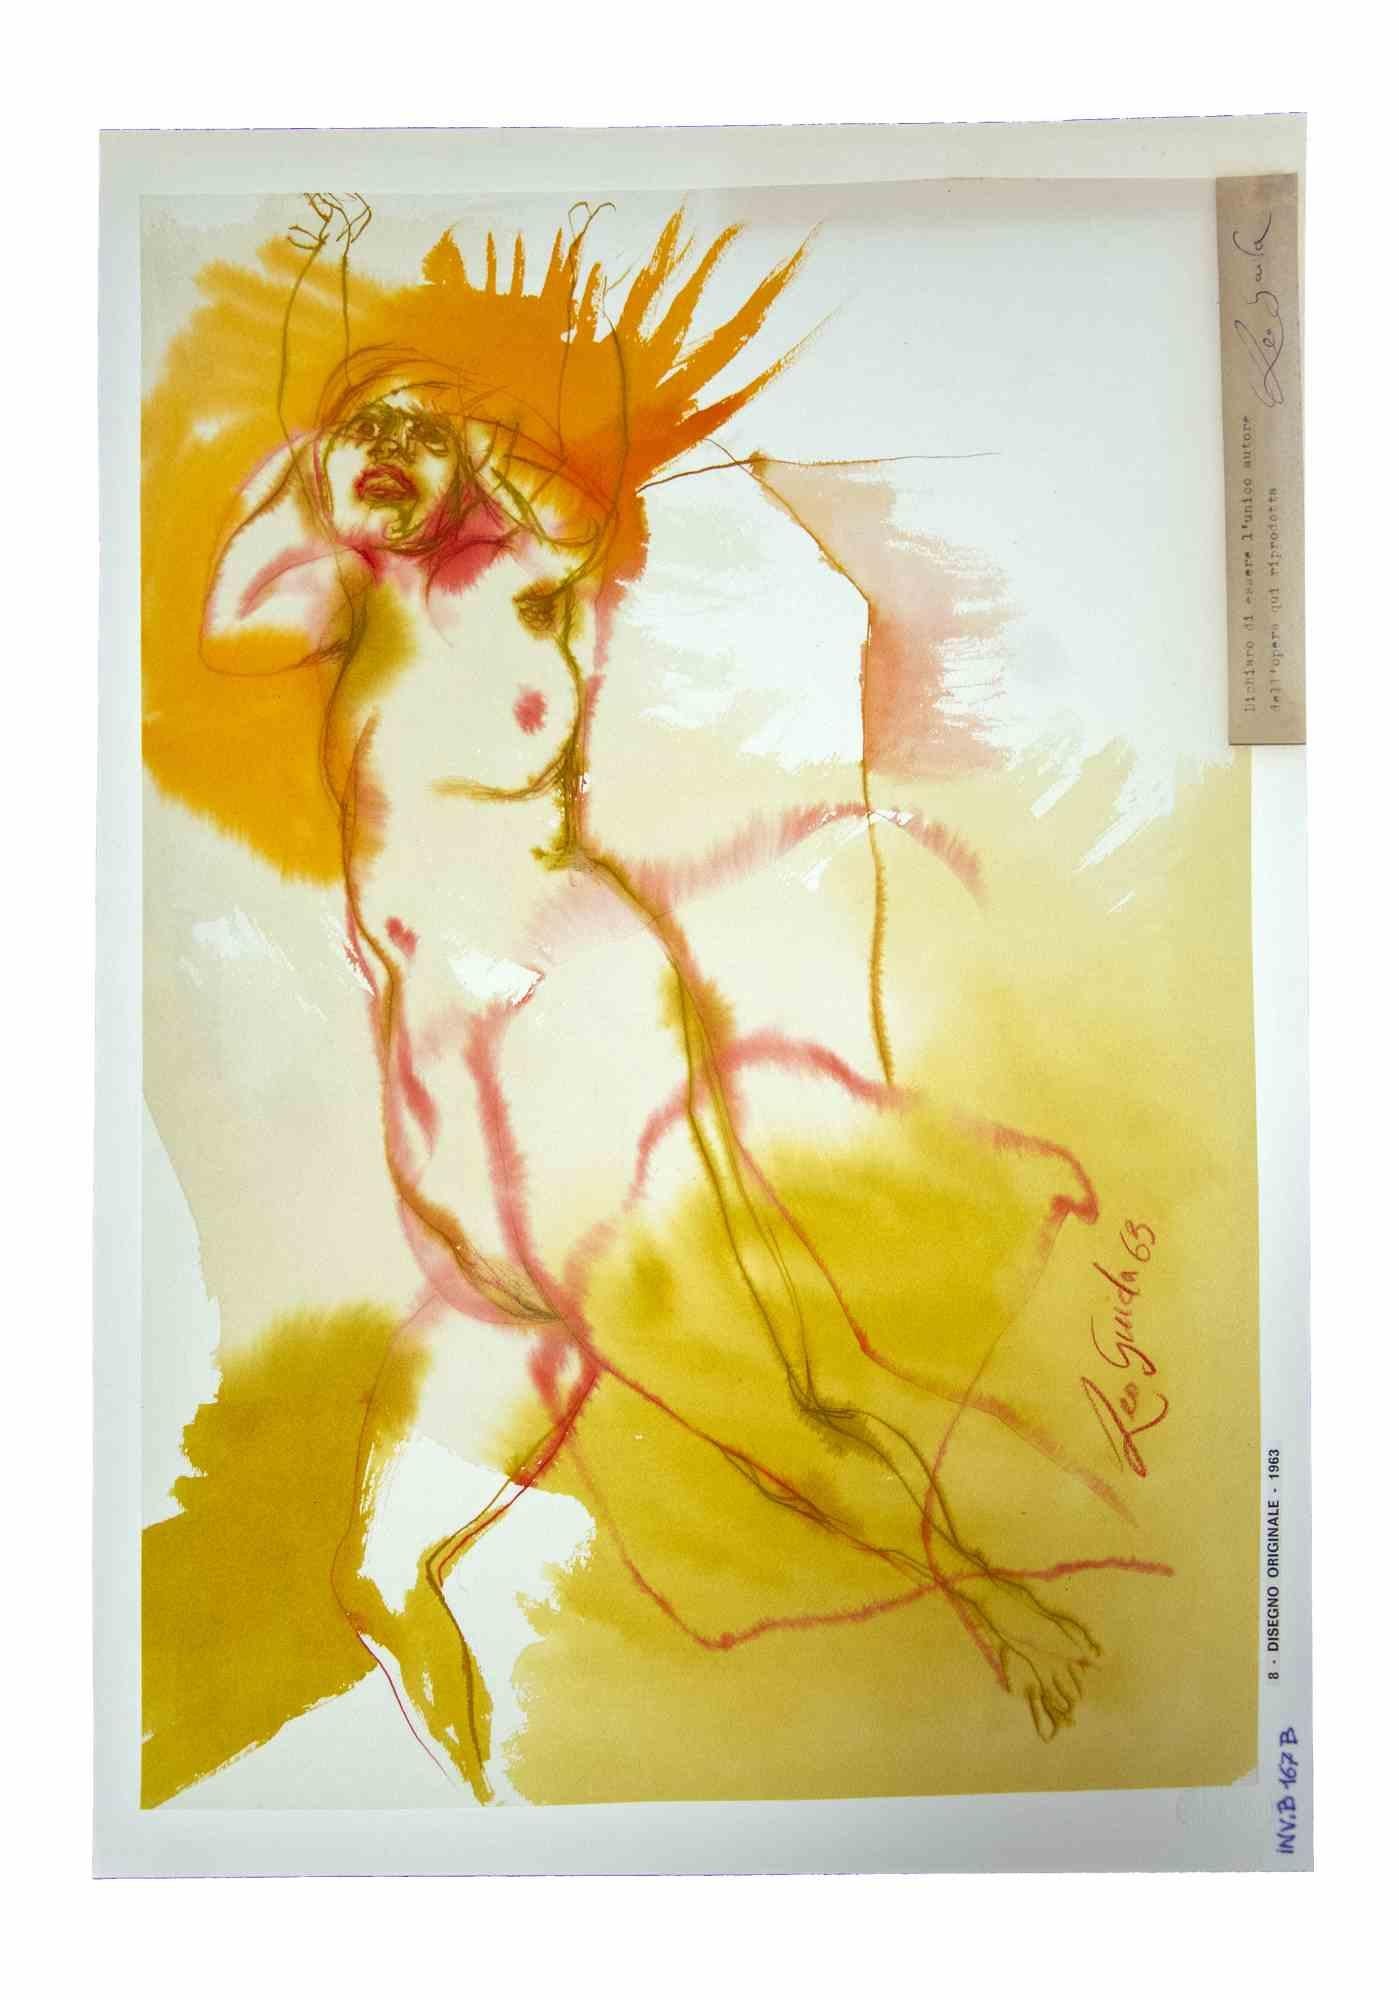 Nude ist ein originales Kunstwerk, realisiert  im Jahr 1963 von dem italienischen zeitgenössischen Künstler  Leo Guida  (1992 - 2017).

Originalzeichnung mit Tusche und Aquarellfarben auf elfenbeinfarbenem Papier, auf Karton geklebt (50 x 35